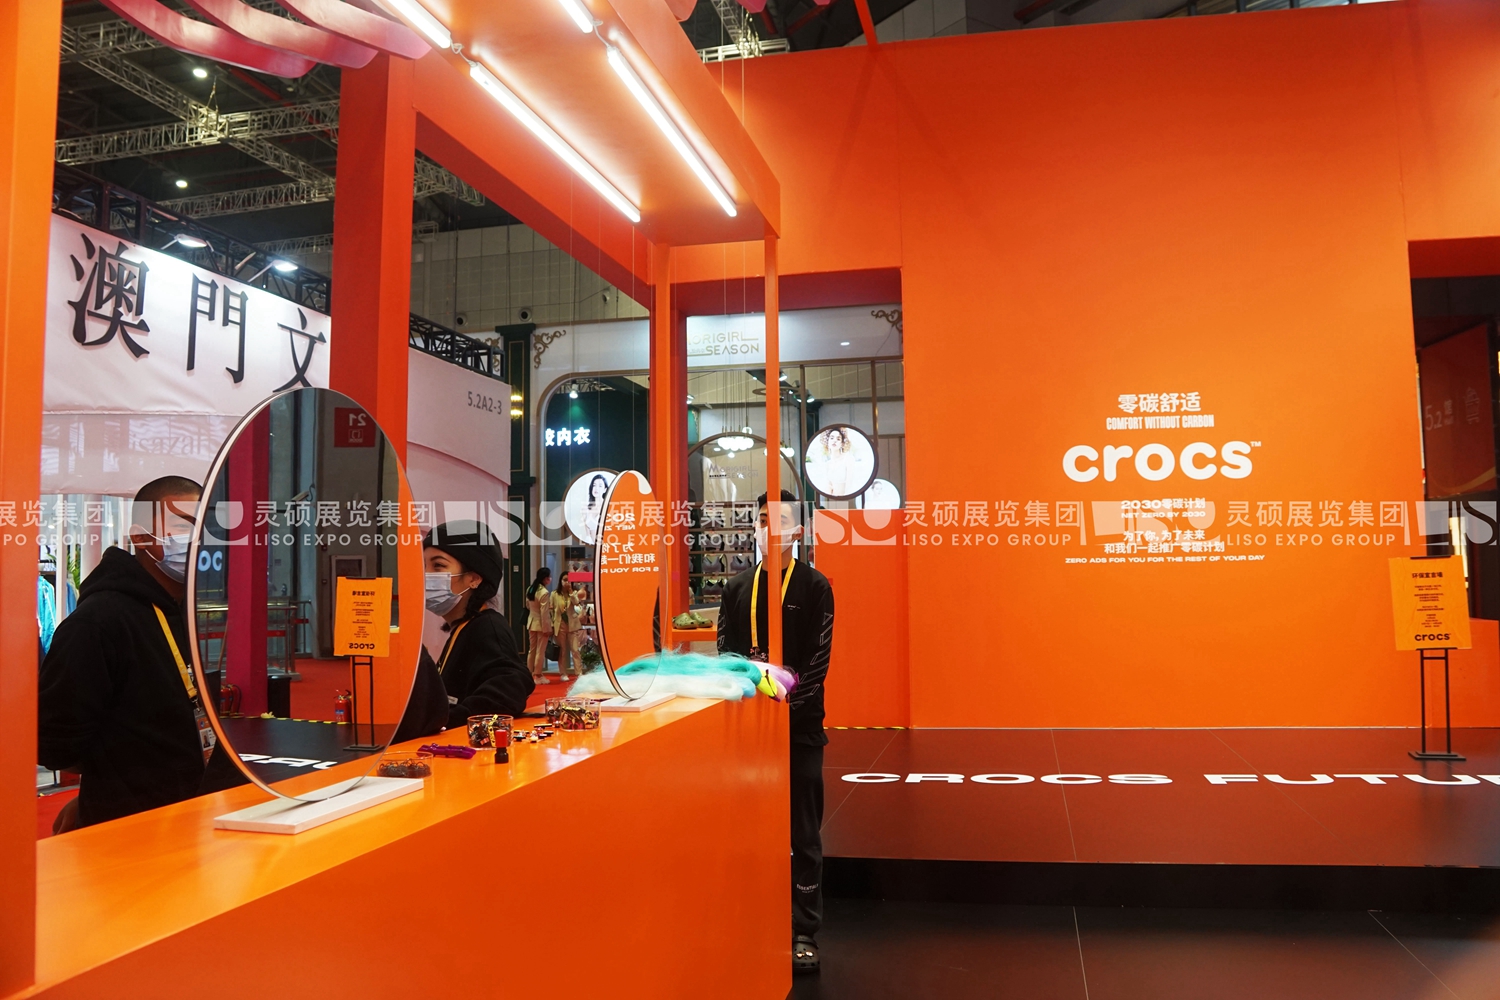 卡骆驰crocs-第四届进博会展台设计搭建案例